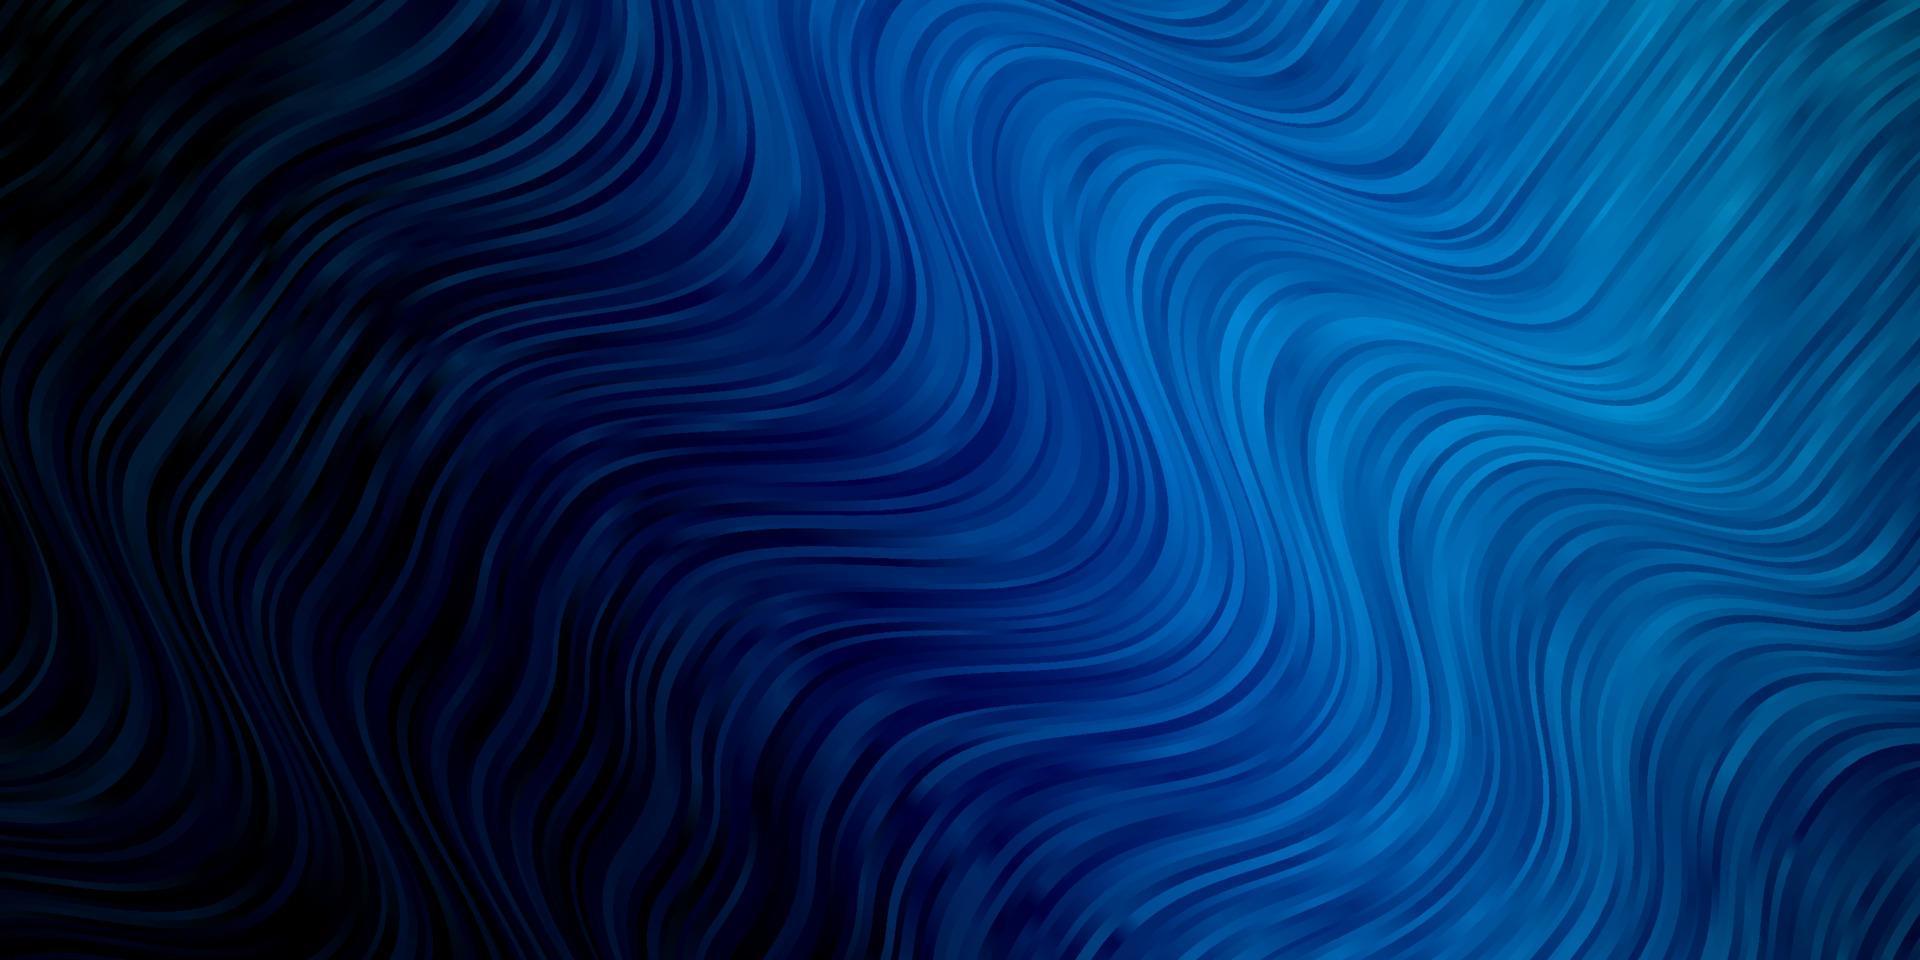 modelo de vetor azul escuro com curvas.